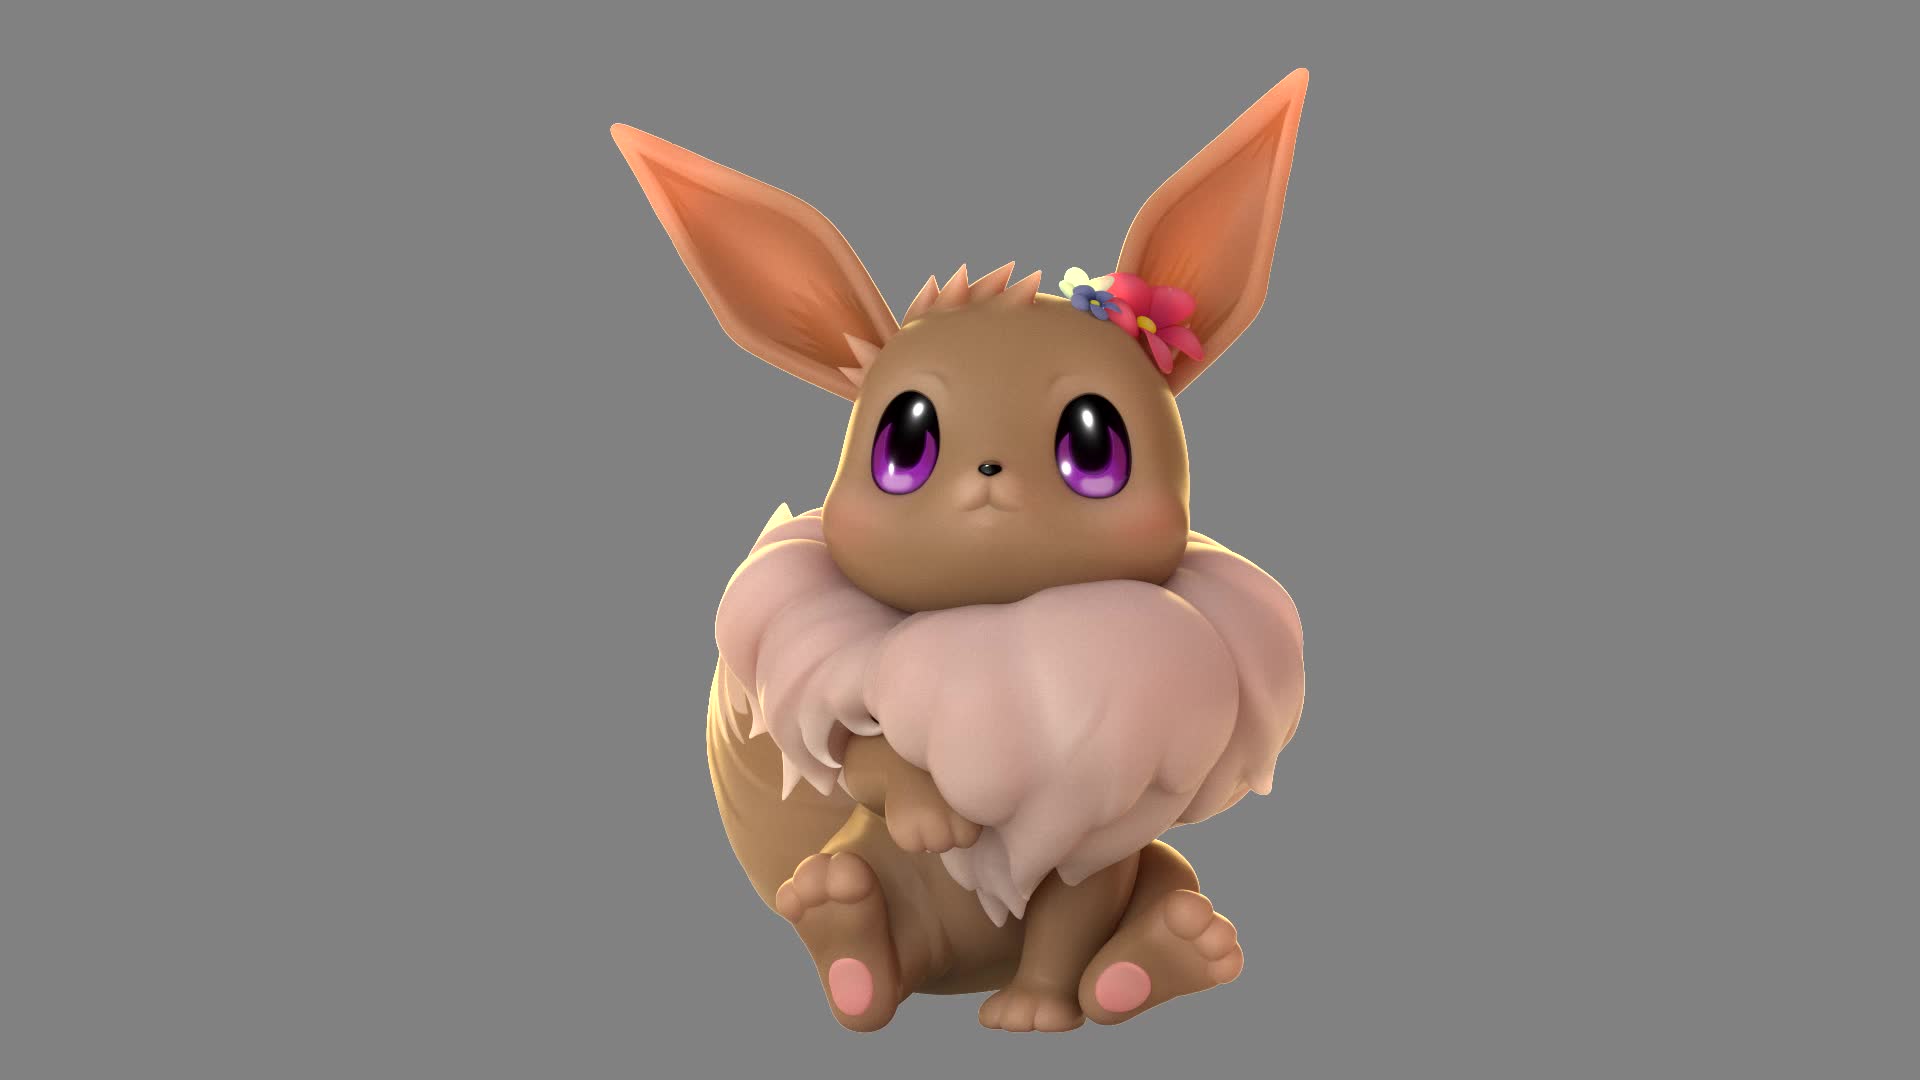 ArtStation - 3D Zbrush Pokemon Eevee modeling